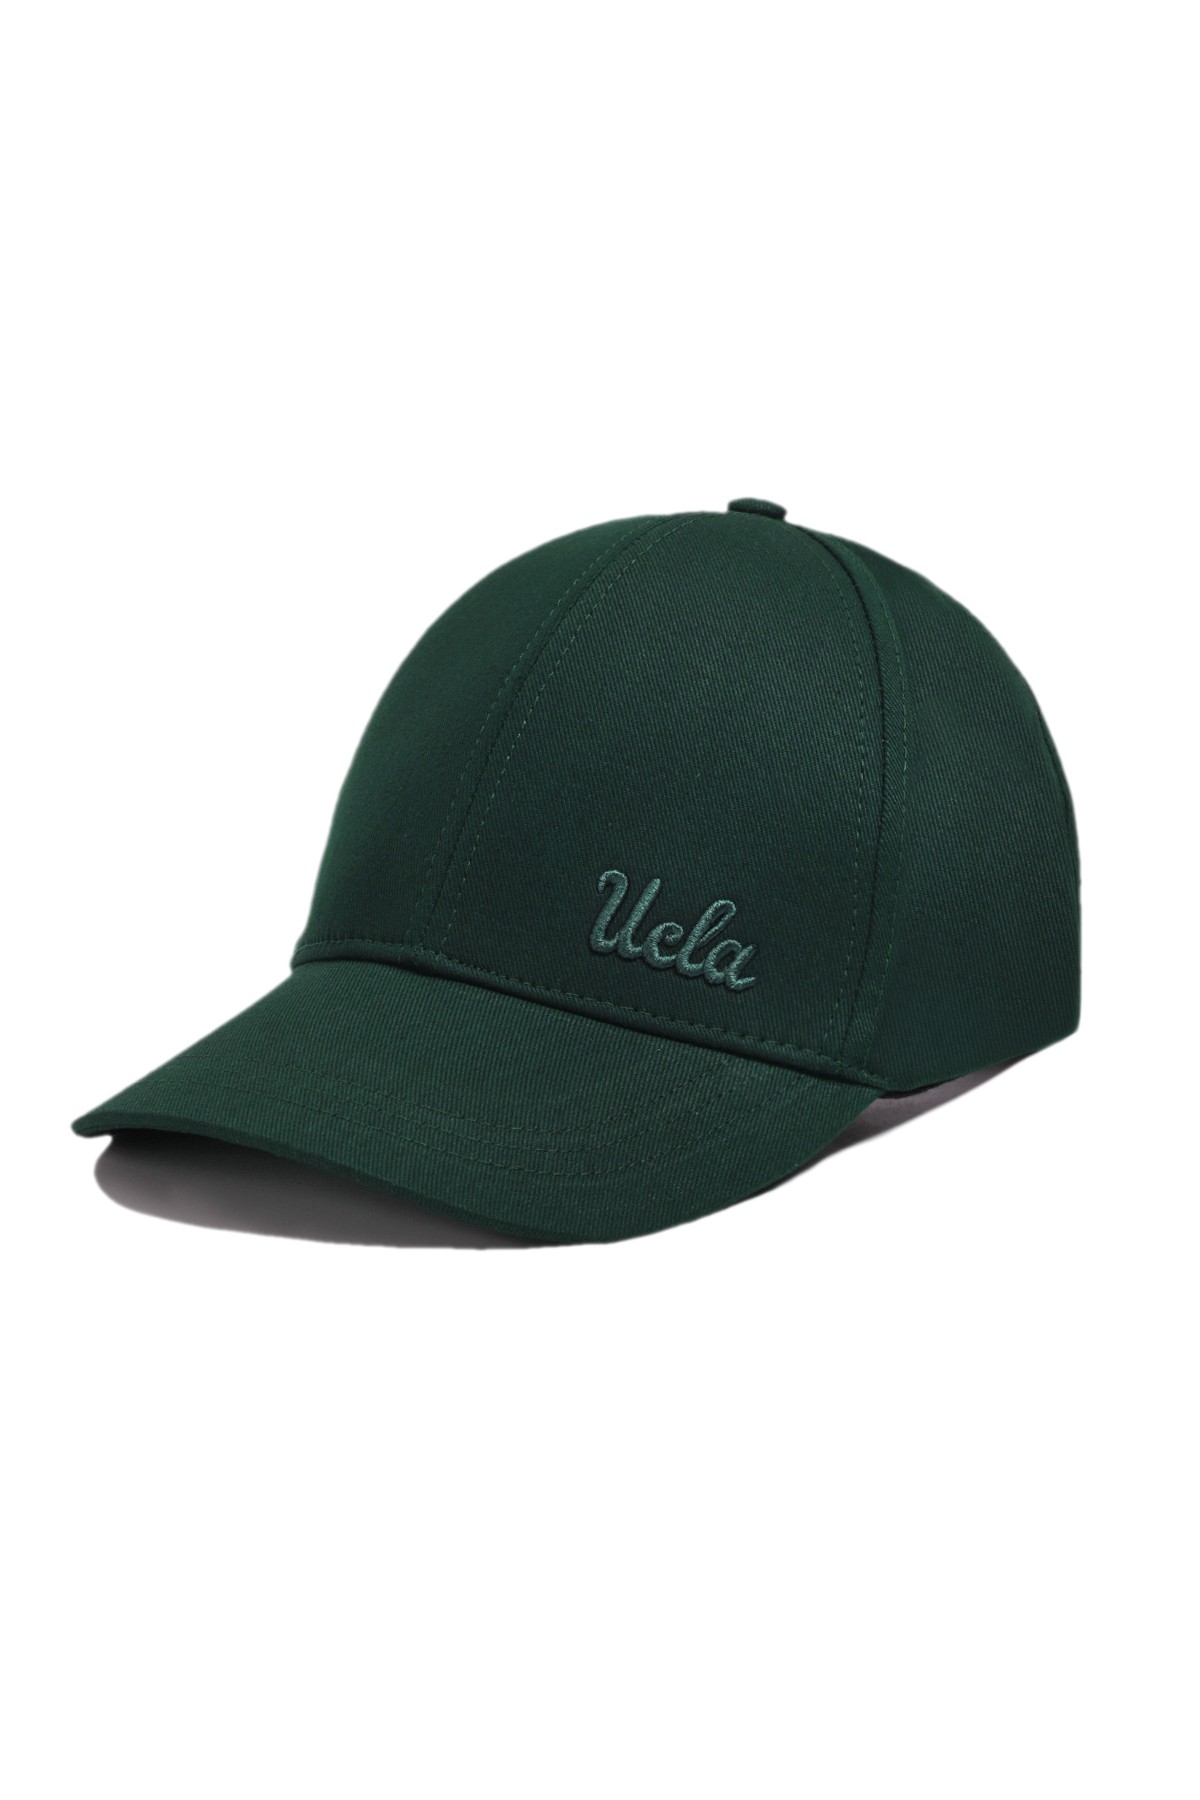 NEO Yeşil Baseball Cap Nakışlı - Unisex Şapka